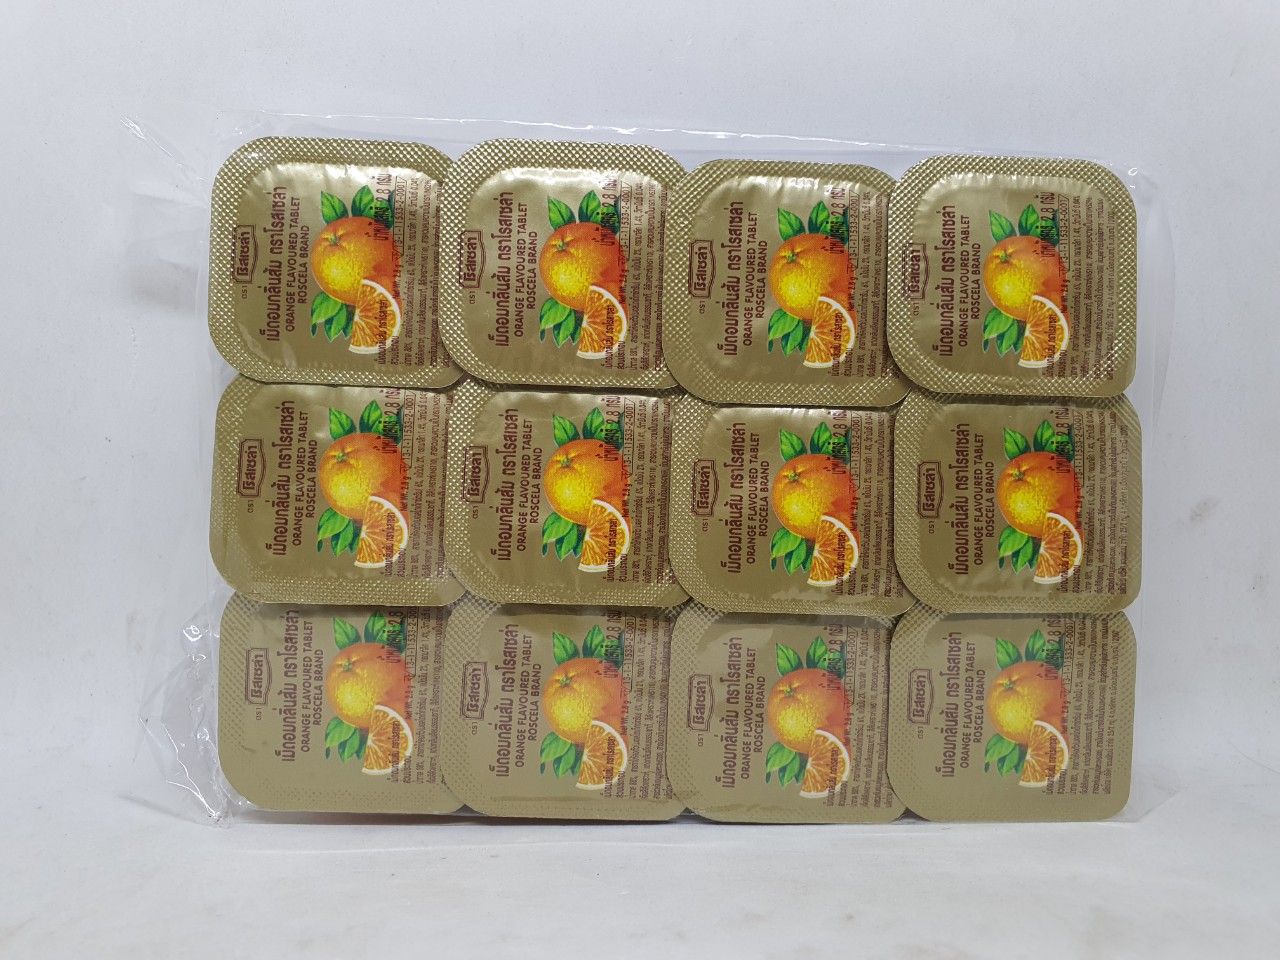  Kẹo ngậm cam vitamin c orange flavoured table chua ngọt có 24 hộp nhỏ hàng thái lan 